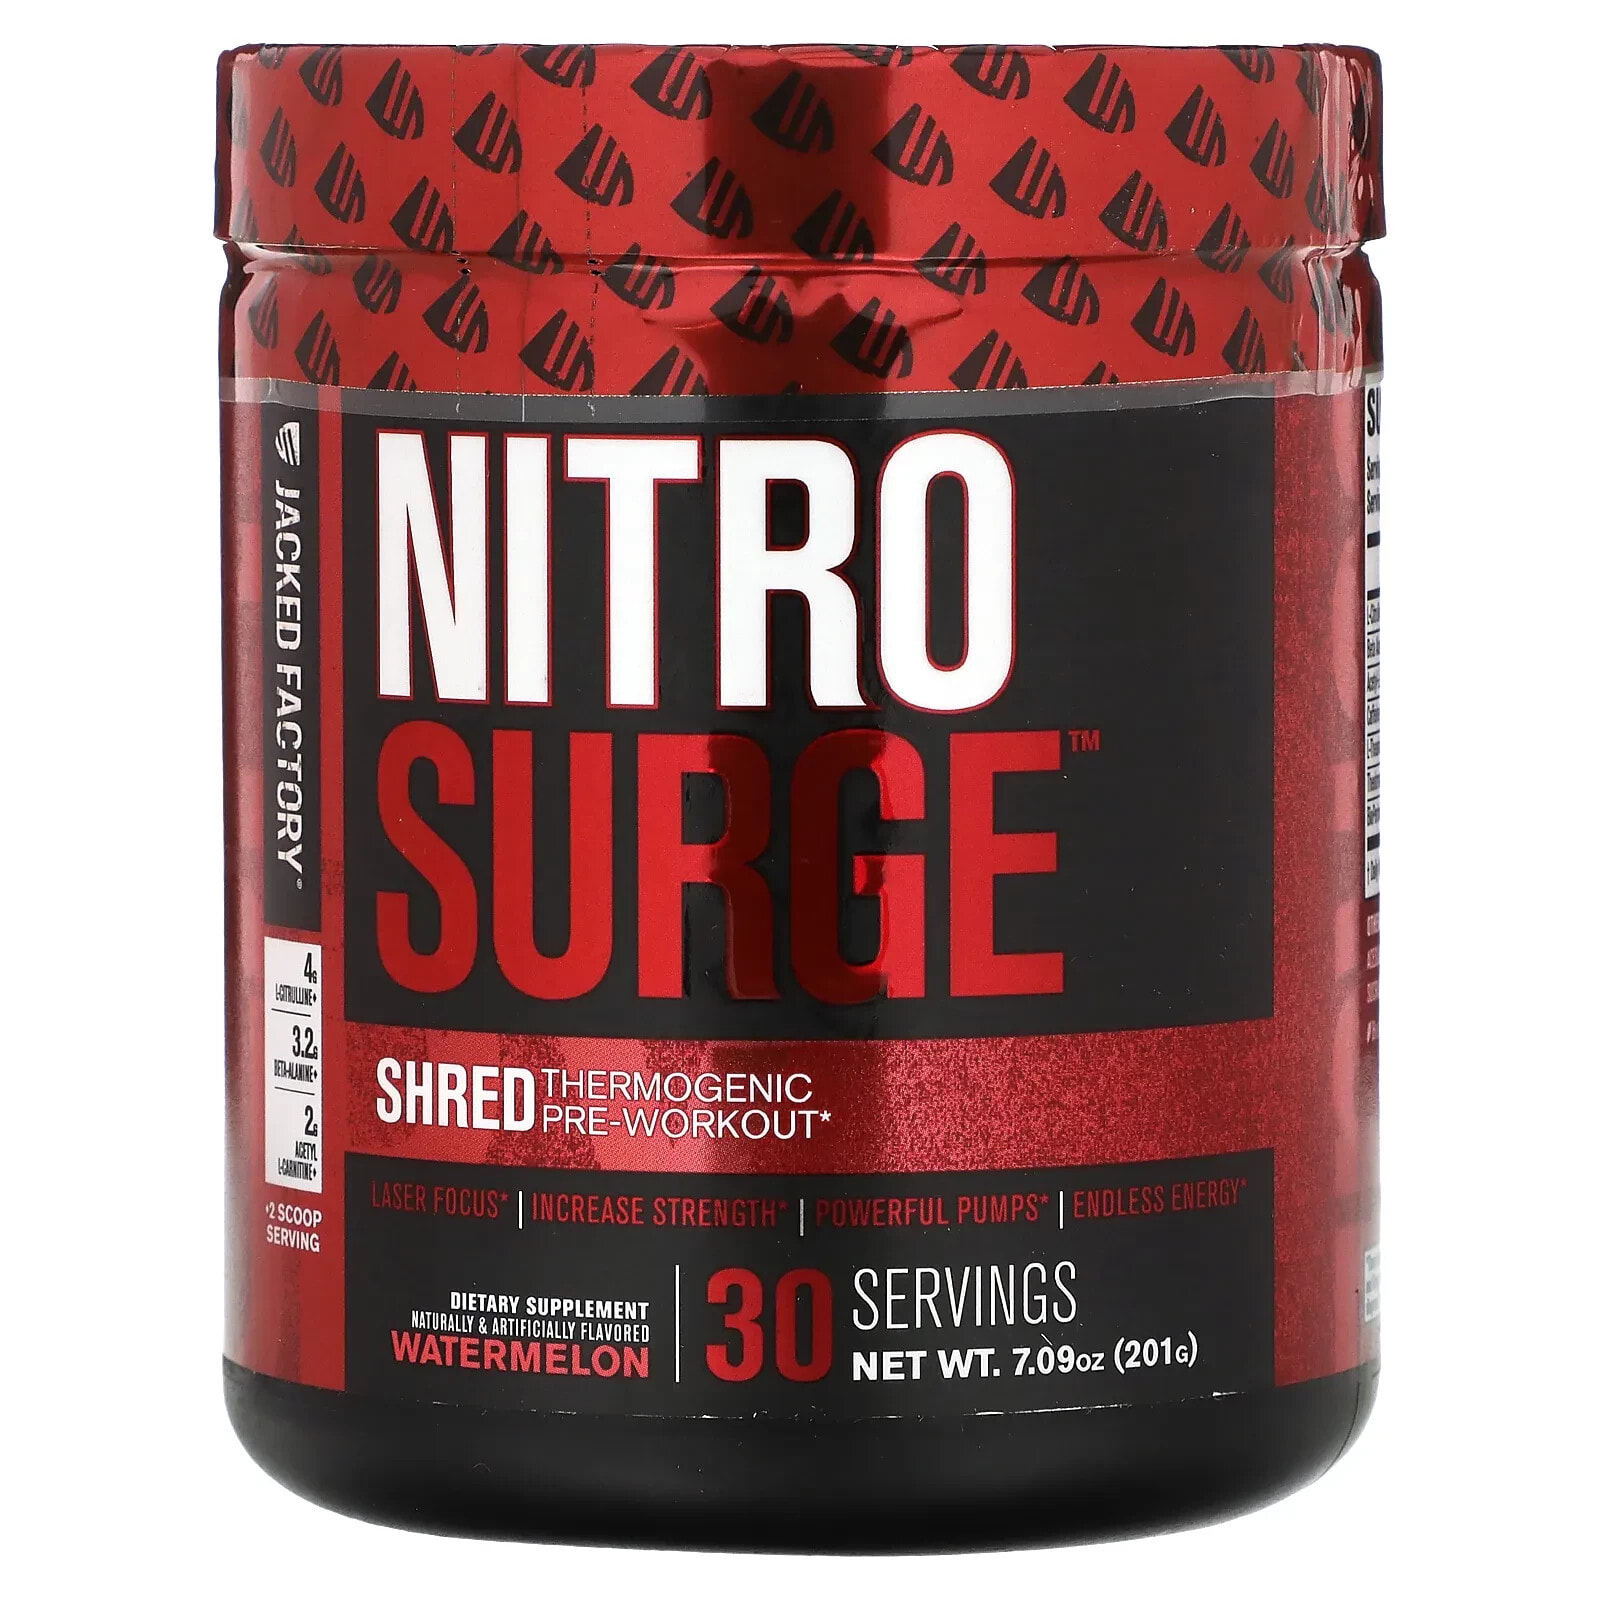 Nitro Surge, Shred Thermogenic Pre-Workout, Orange Pineapple, 7.4 oz (210 g)